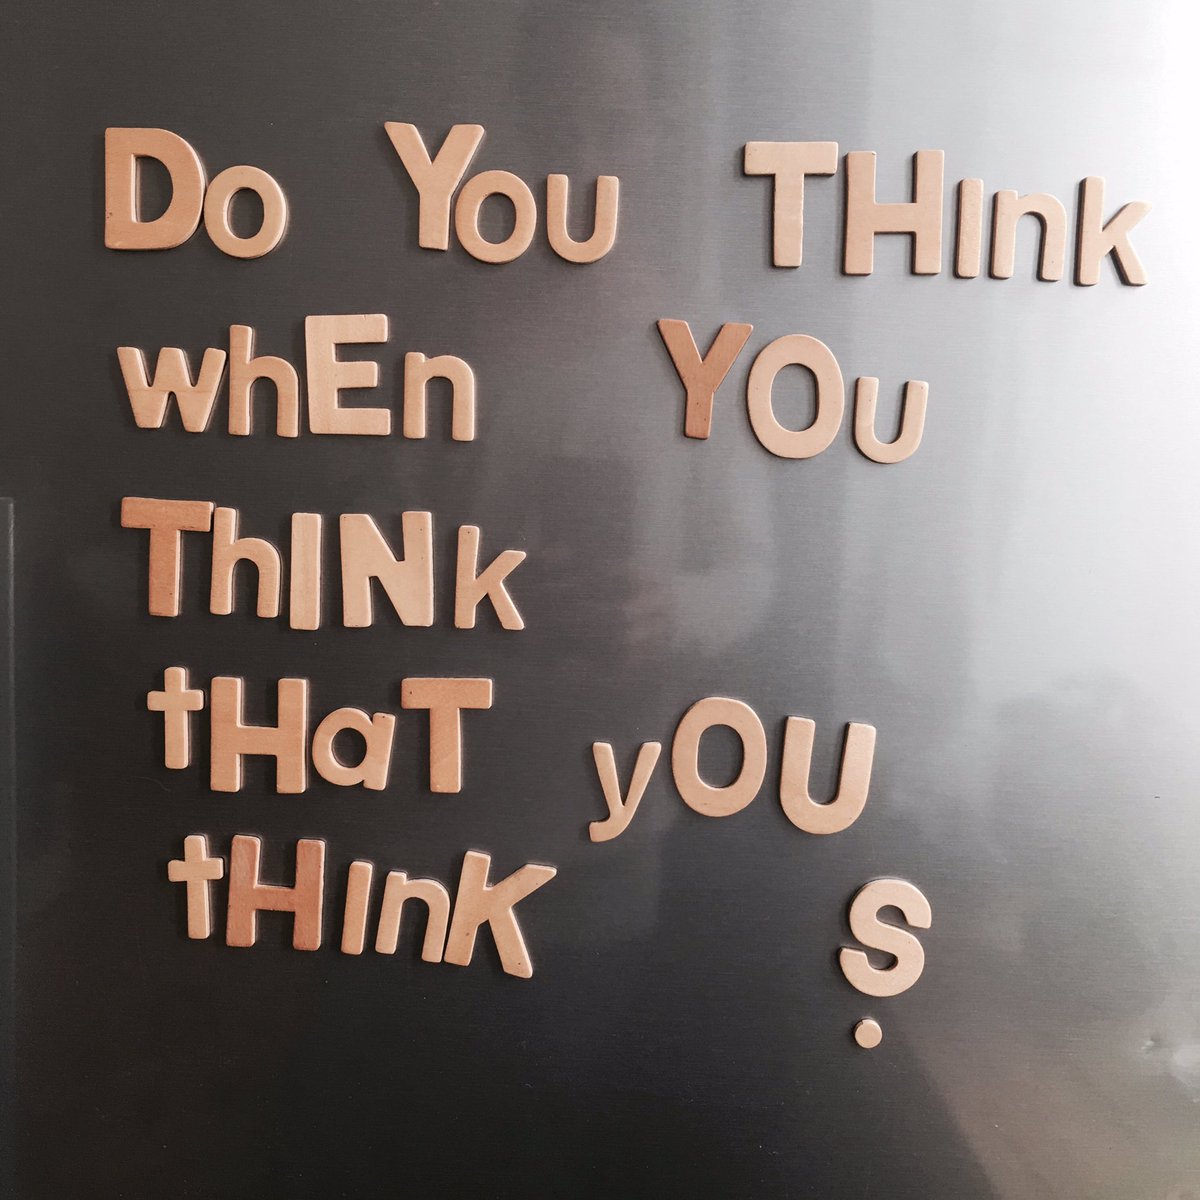 #quoteoftheday #fridgepoetry #think #philosophyforkids